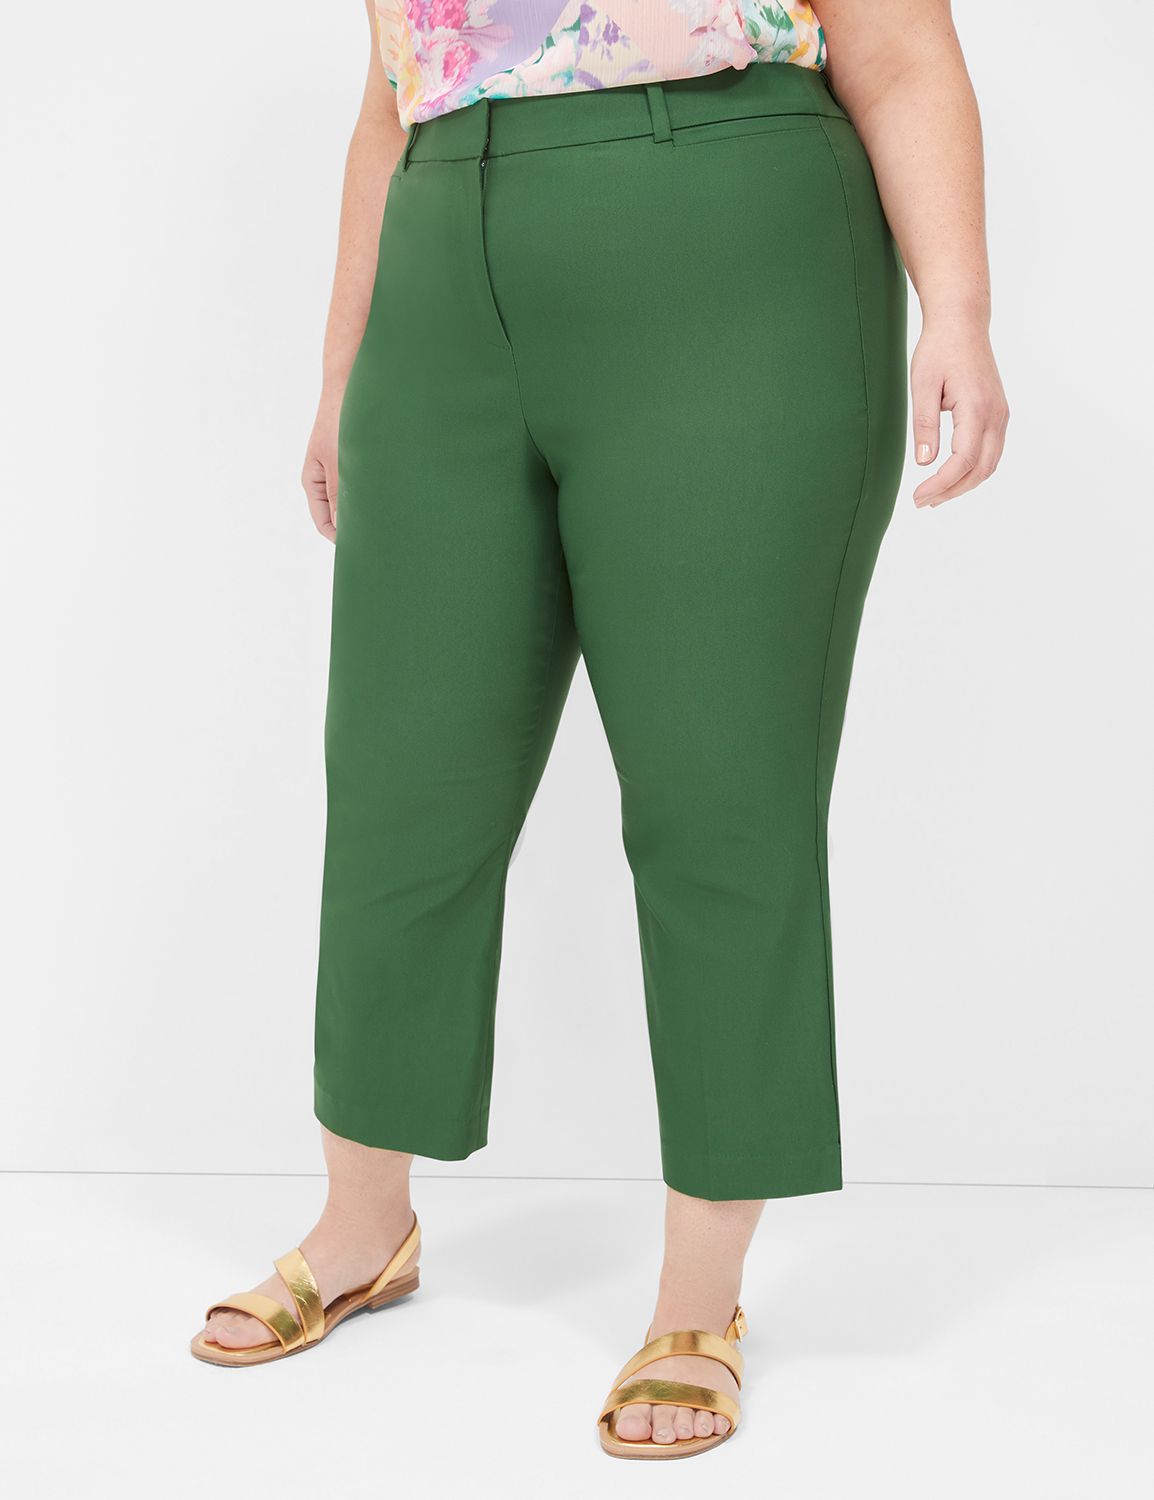 Khombu Women's Woven Stretch Capri Green Size XL for sale online